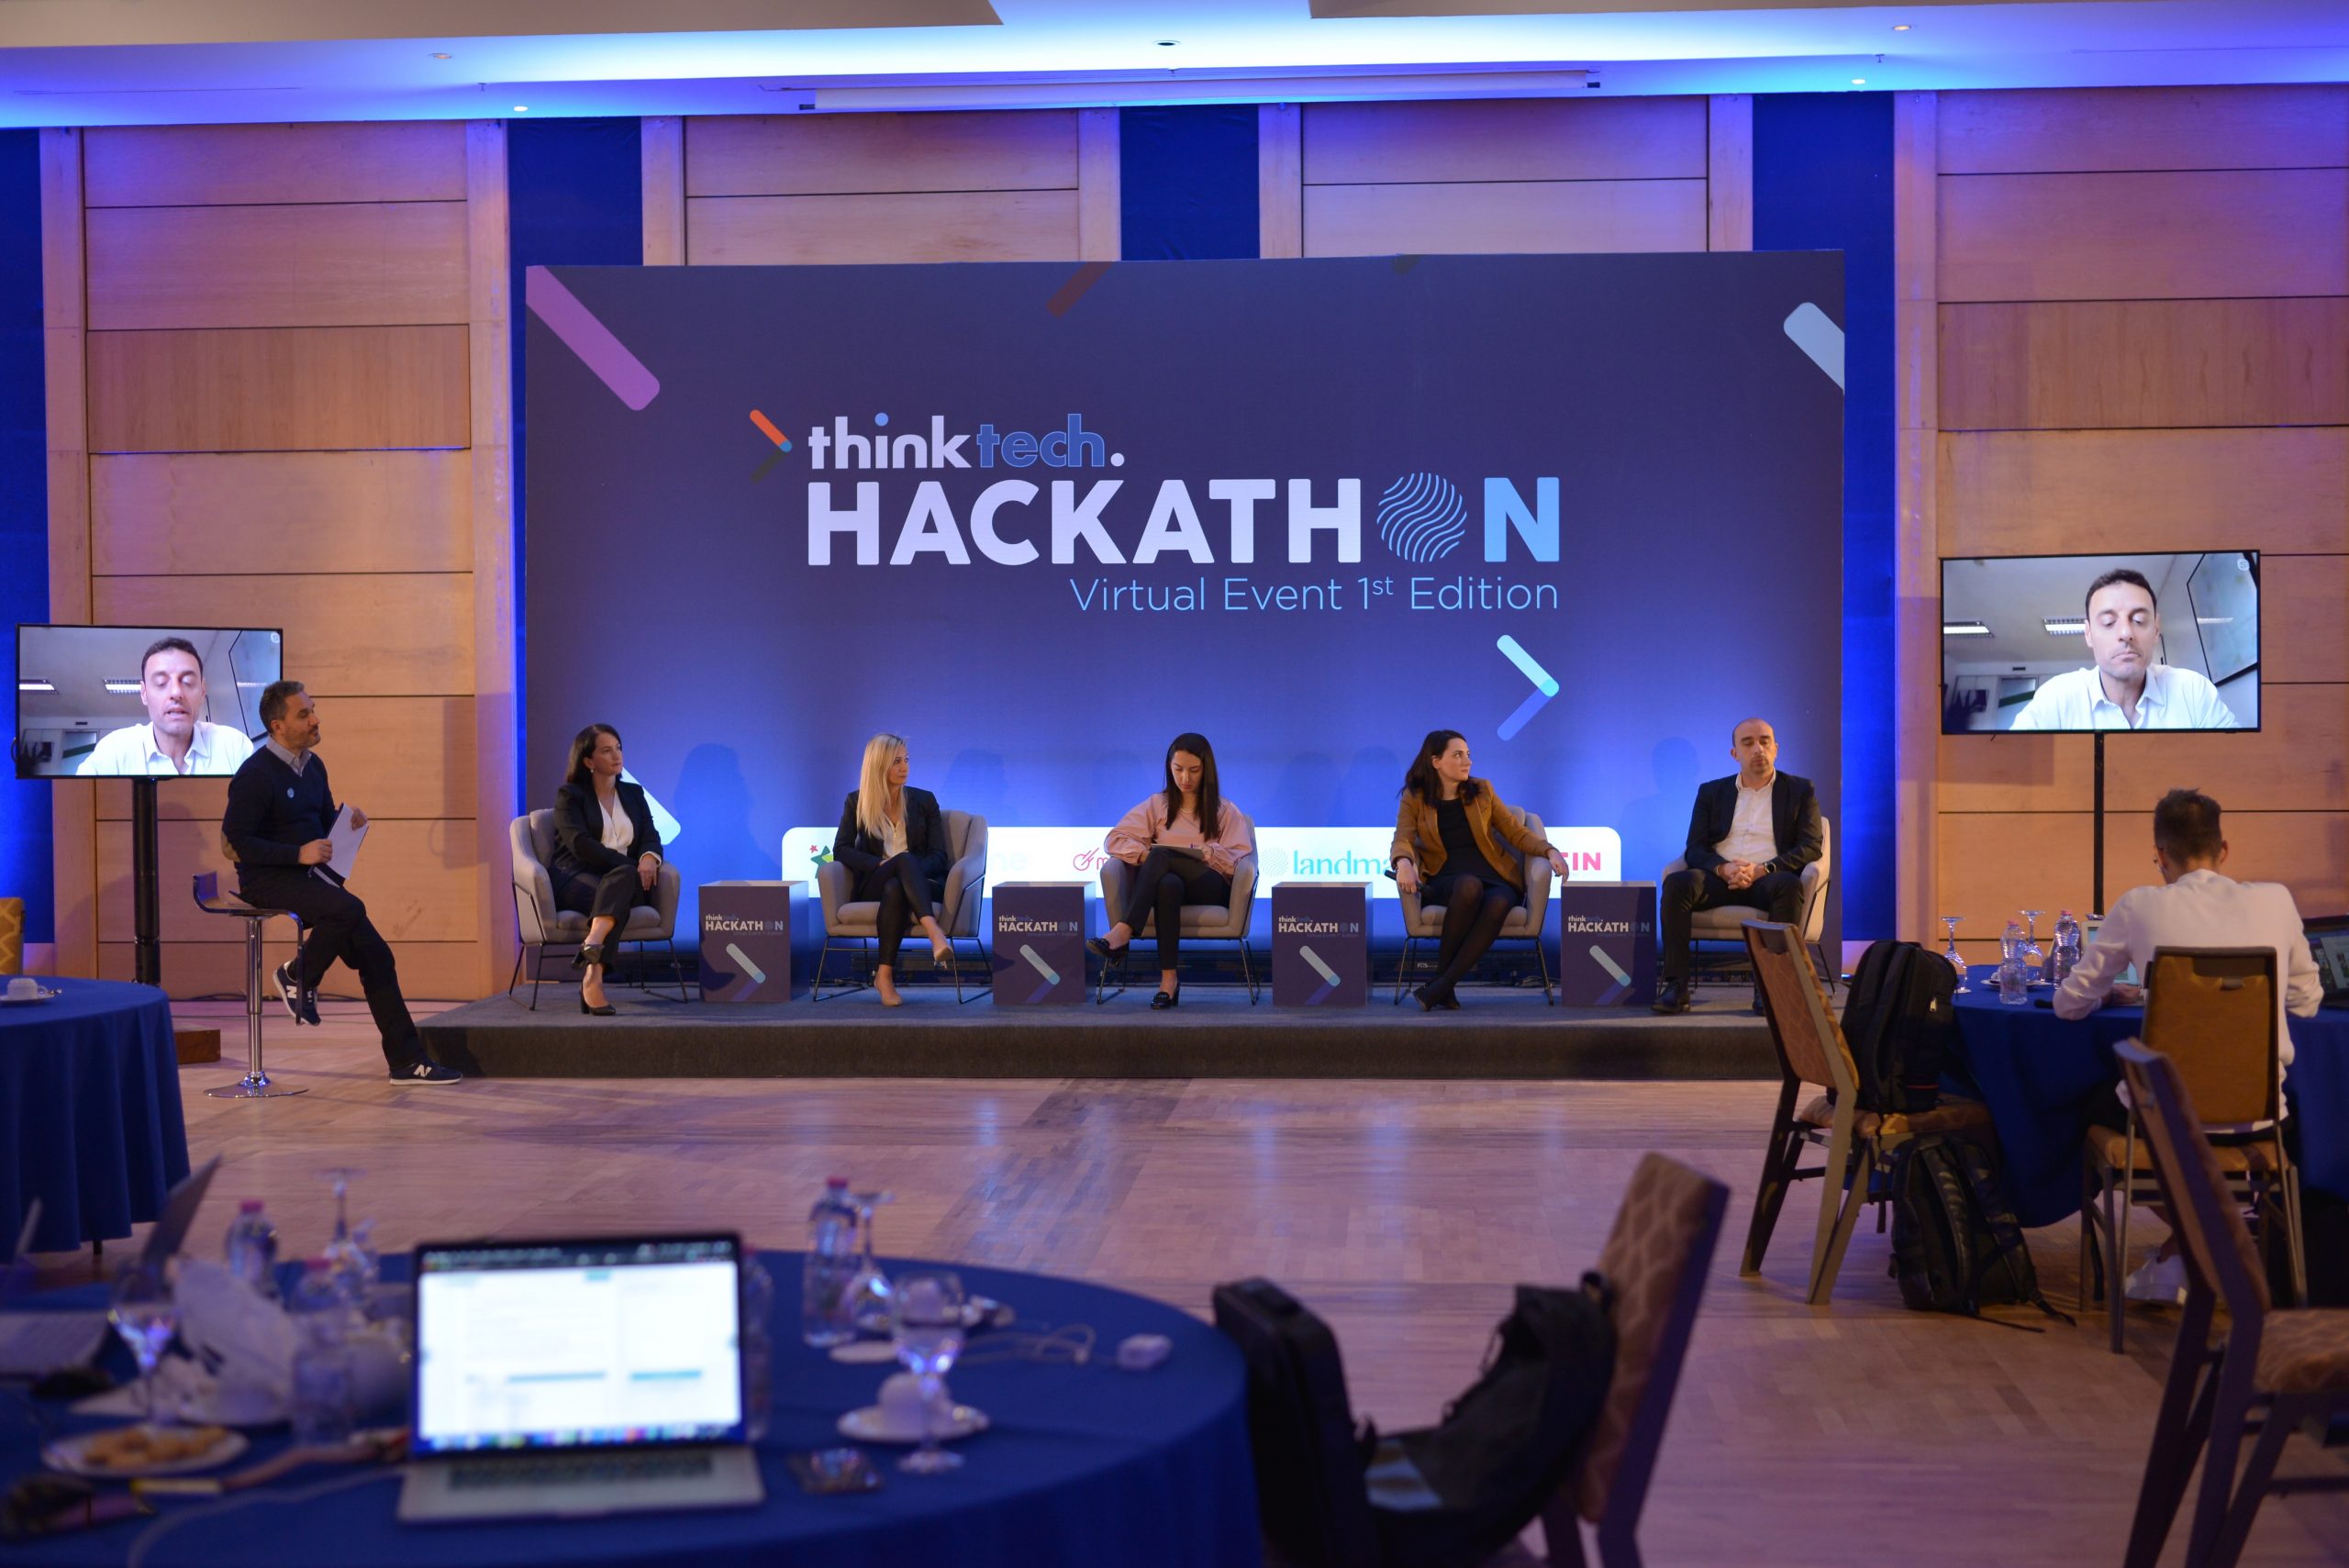 Vjen për herë të parë në Shqipëri “Hackathon”, eventiteknologjik i organizuar nga Landmark